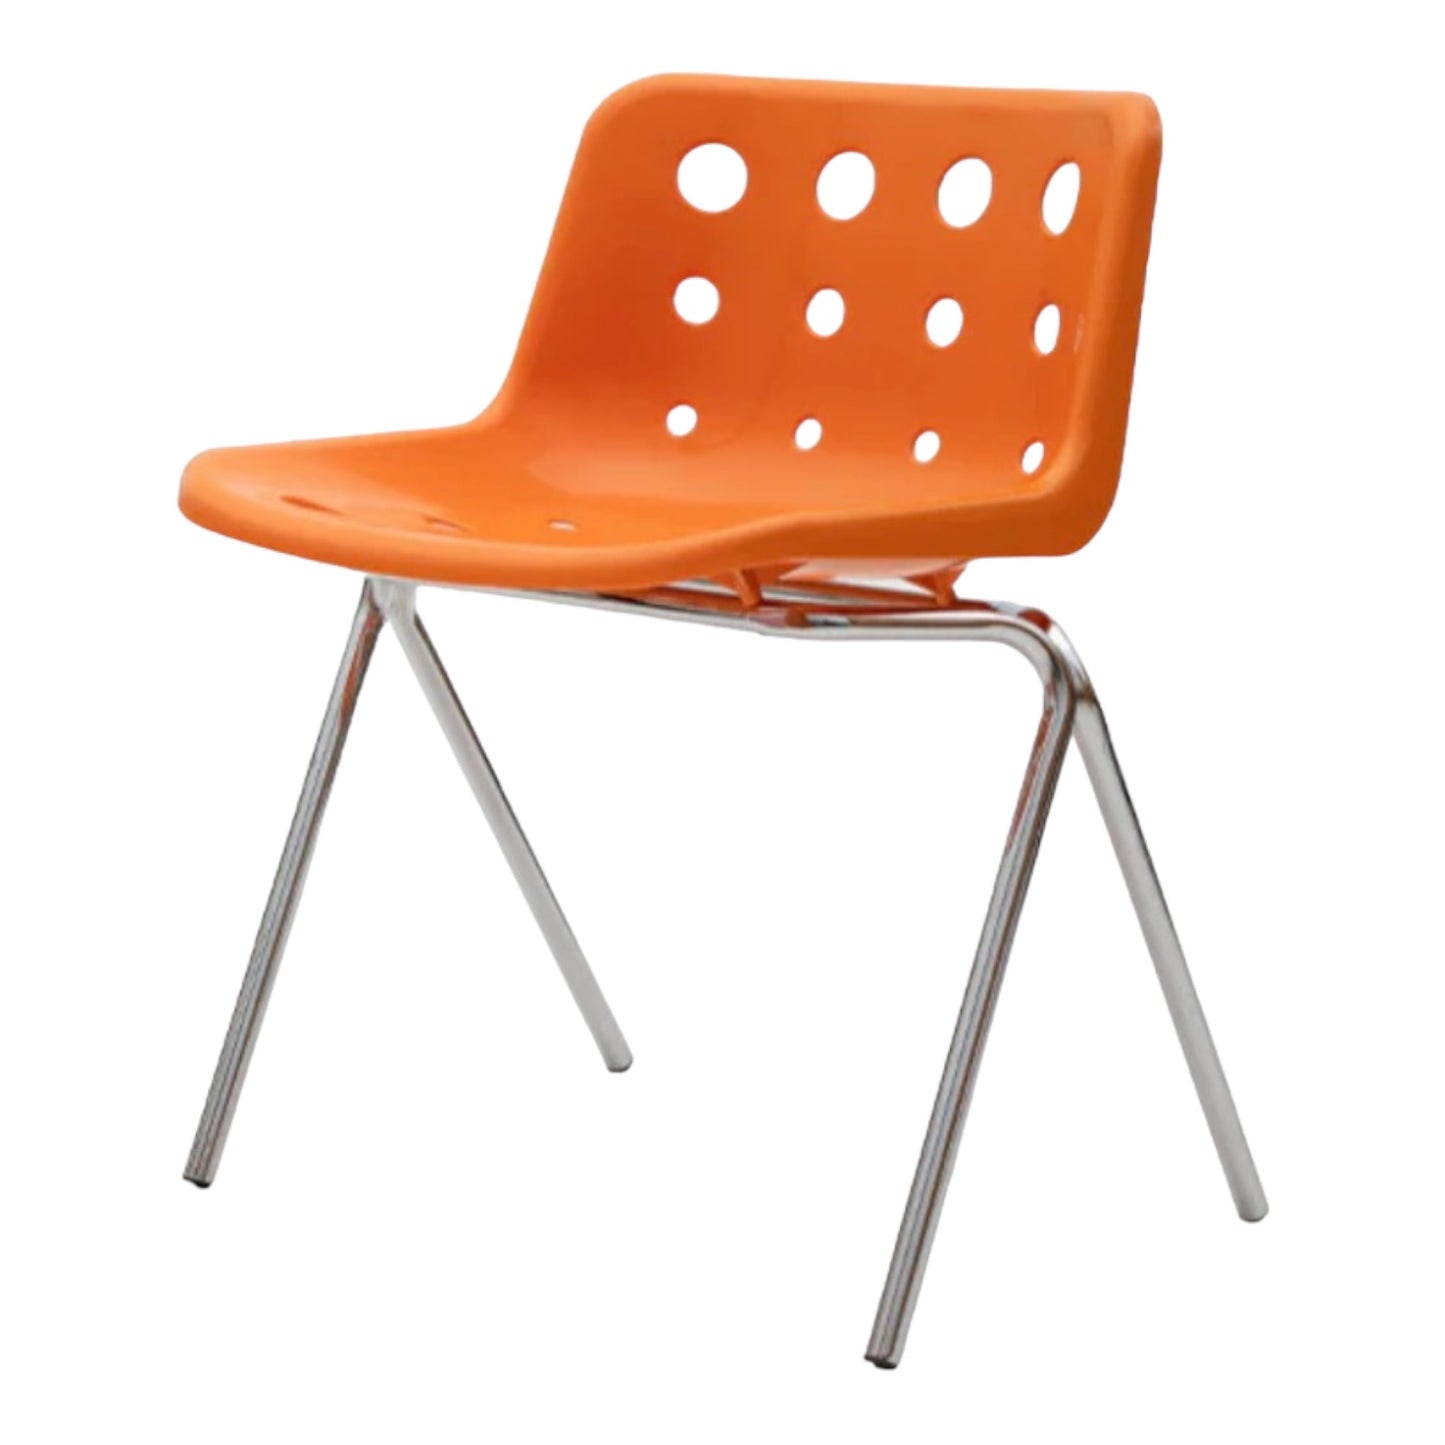 オレンジ色の穴の空いた椅子